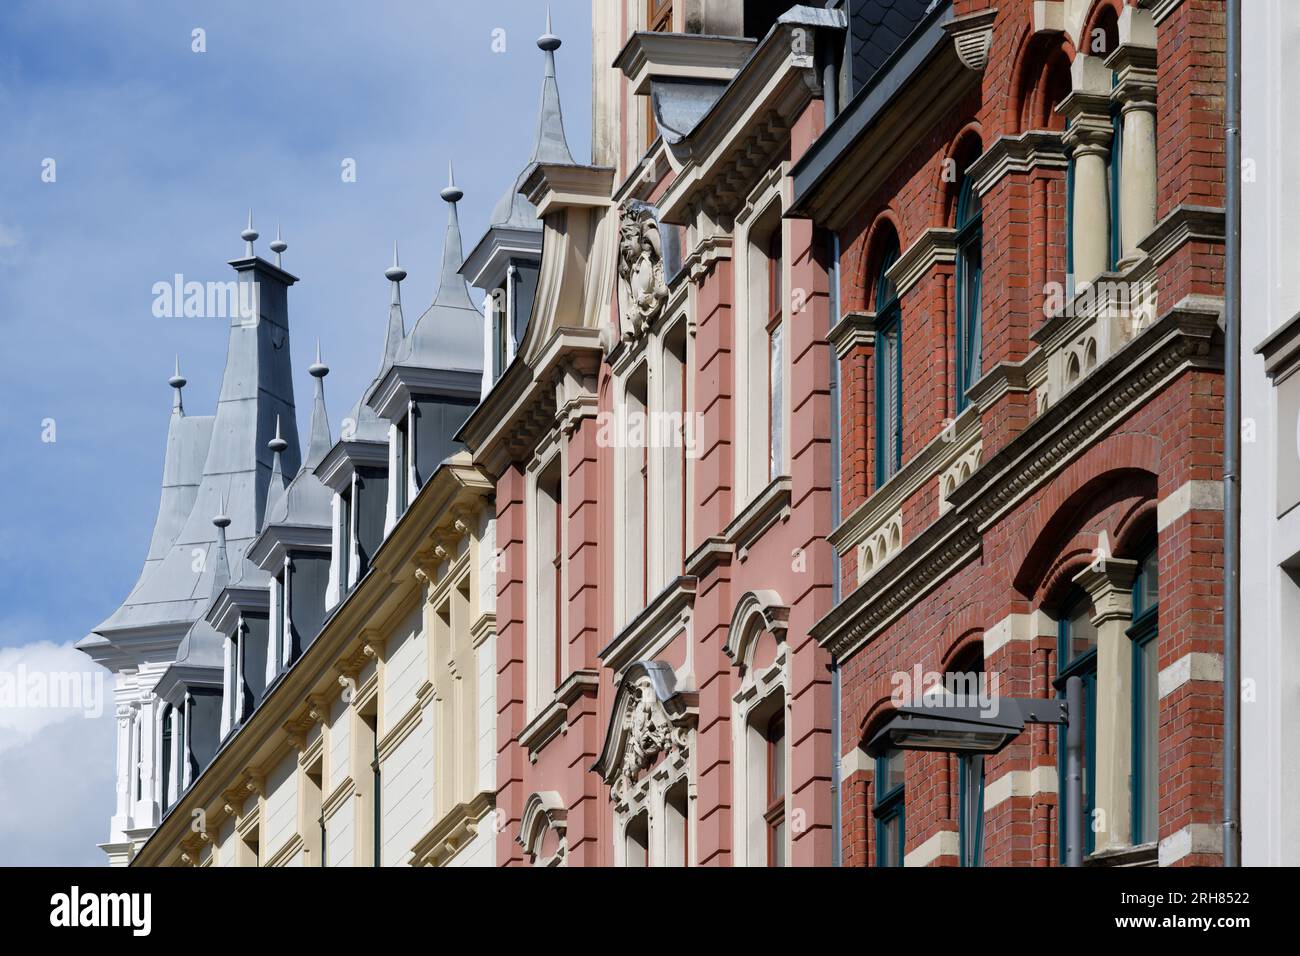 belles façades historicistes pastel ornées avec oriels et tourelles de la fin du 19e siècle dans le quartier friesenviertel de cologne Banque D'Images